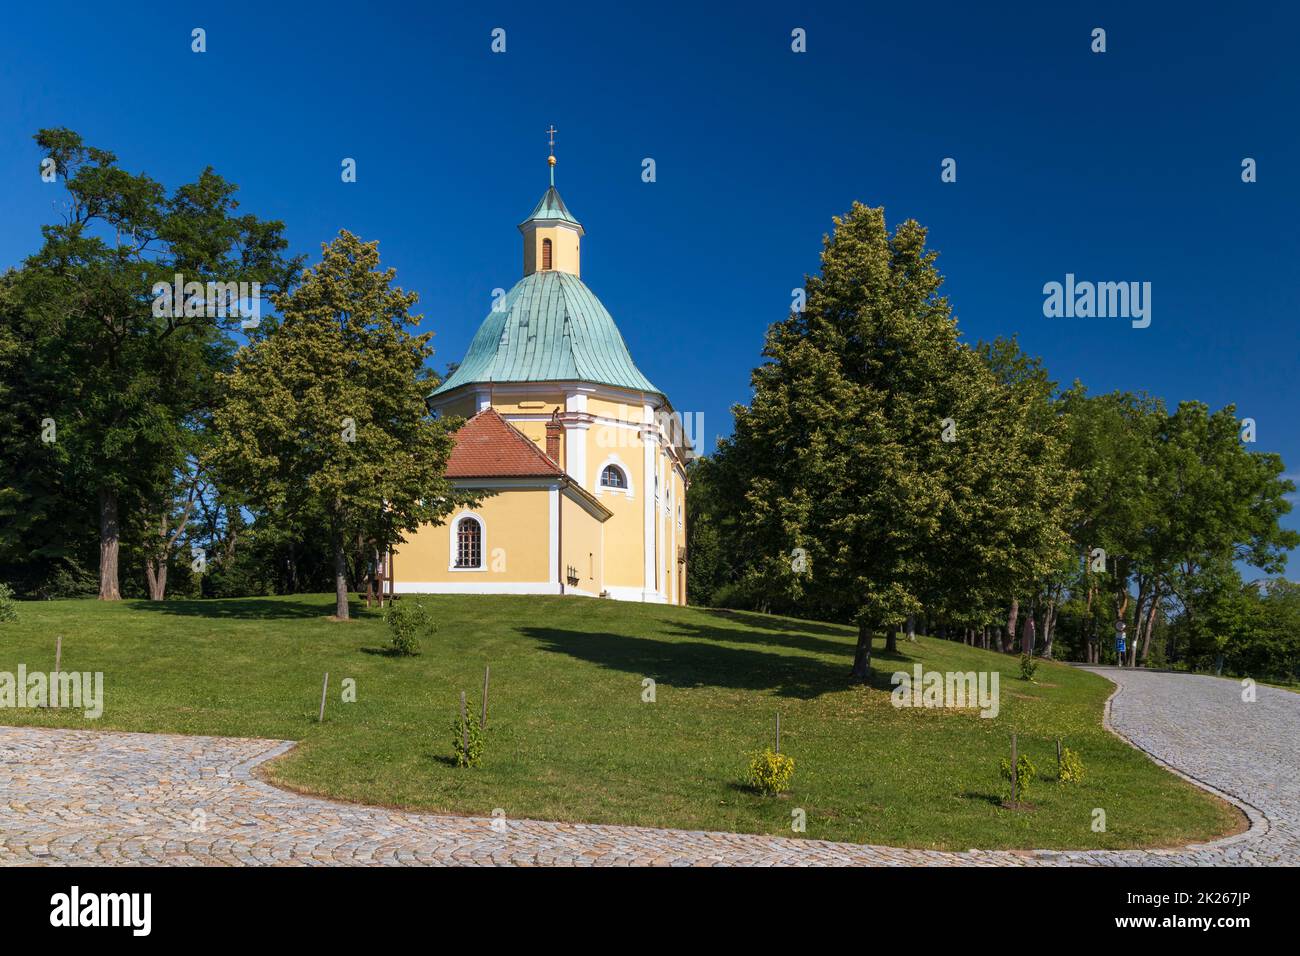 Place of pilgrimage Svaty Antoninek, Blatnice, Southern Moravia, Czech Republic Stock Photo